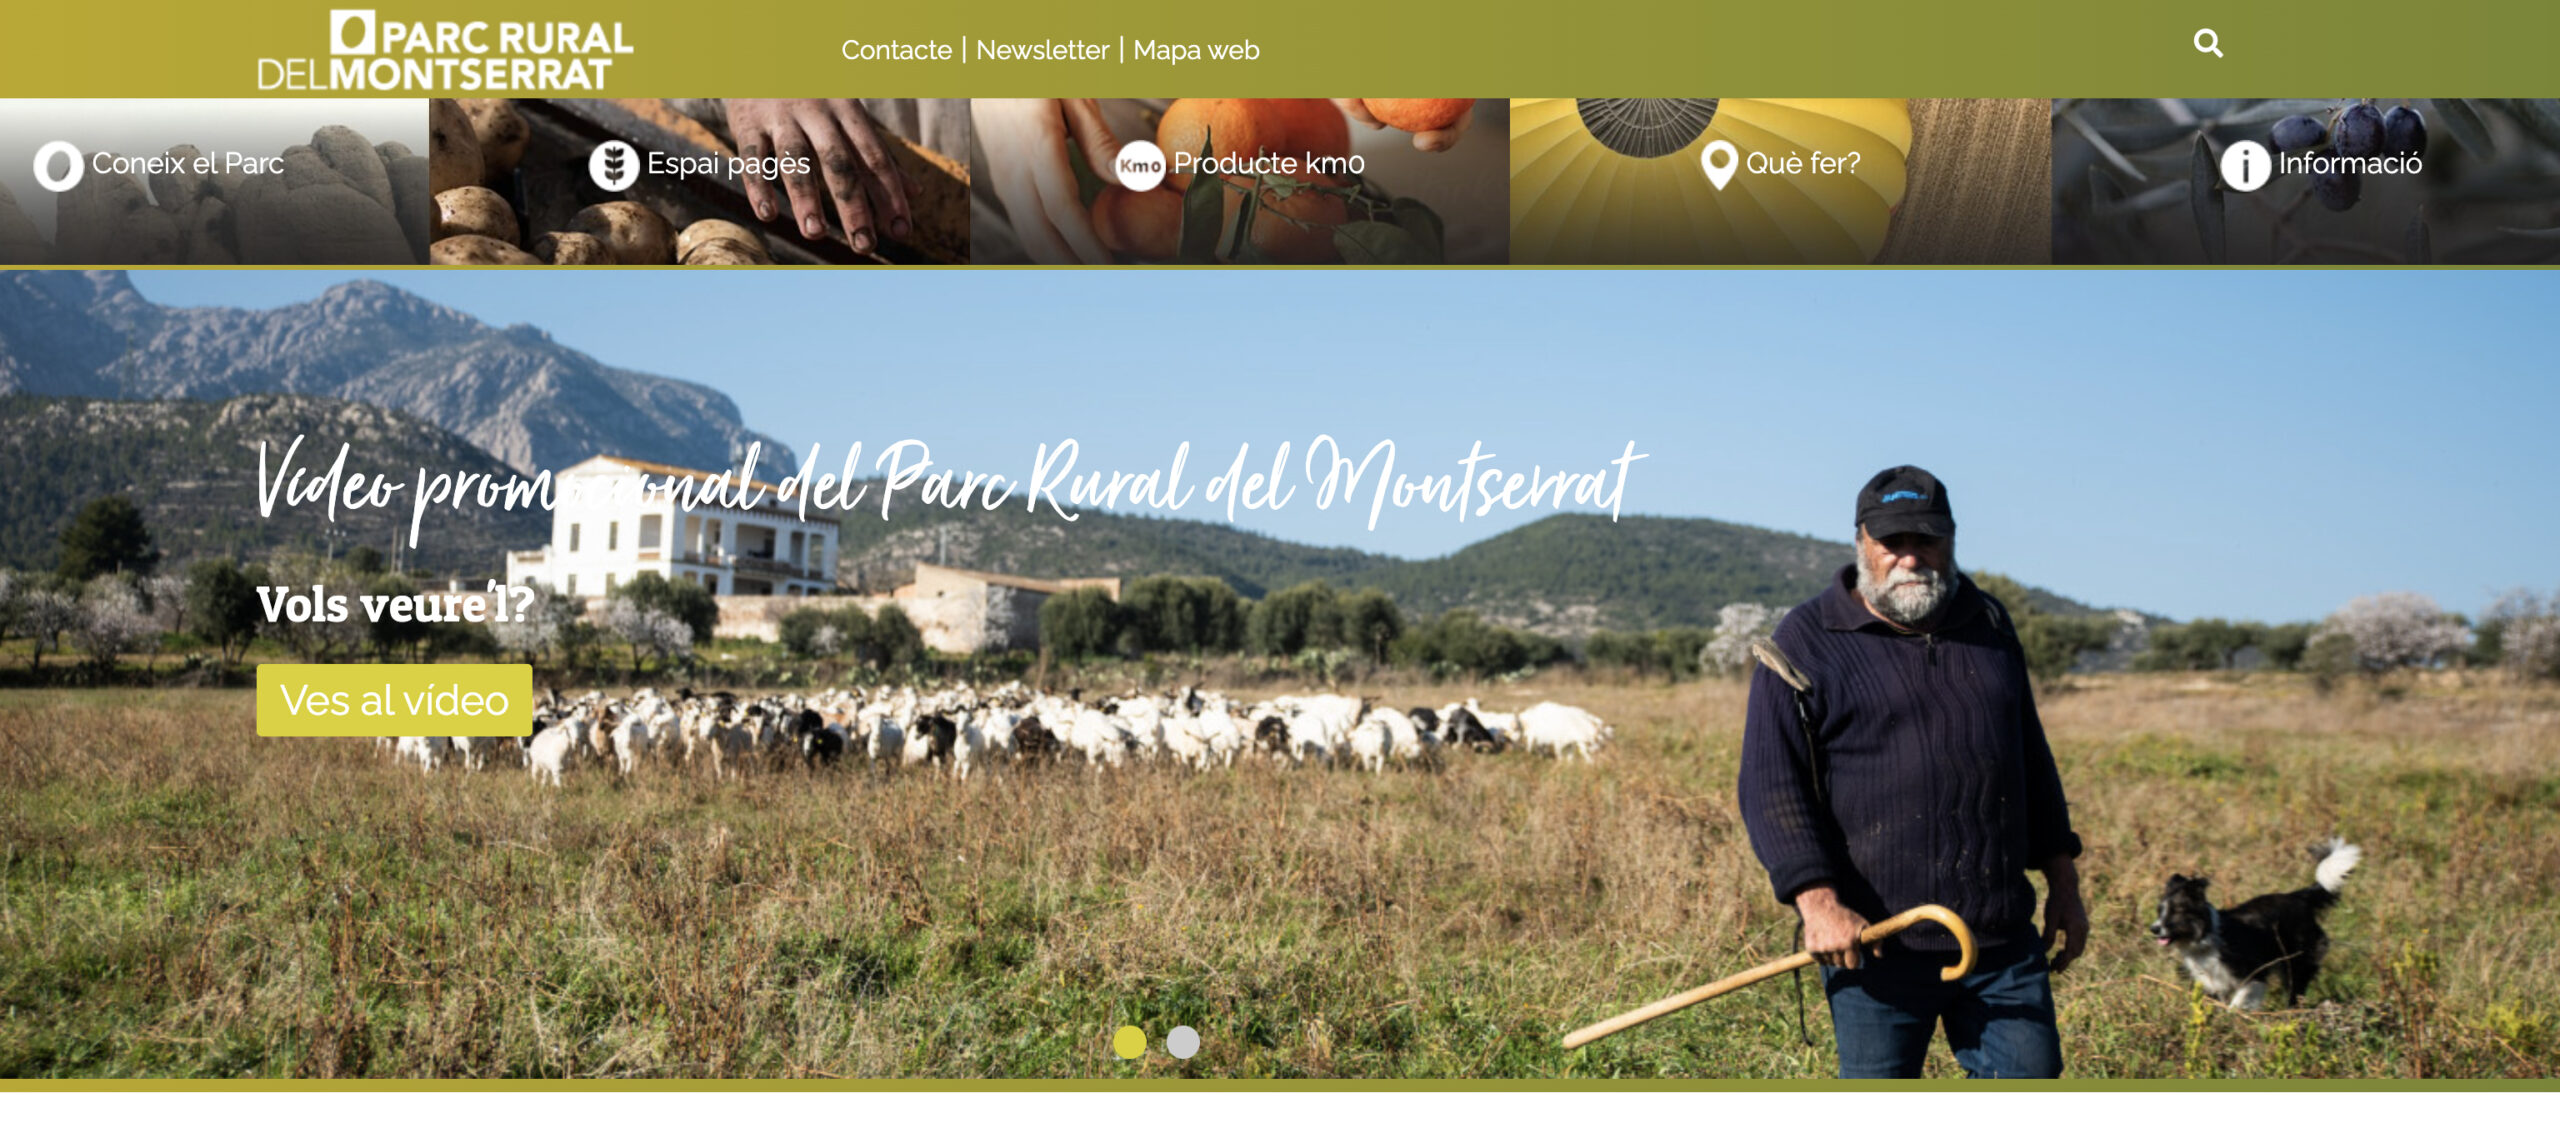 La Bustia web portada Parc Rural Montserra